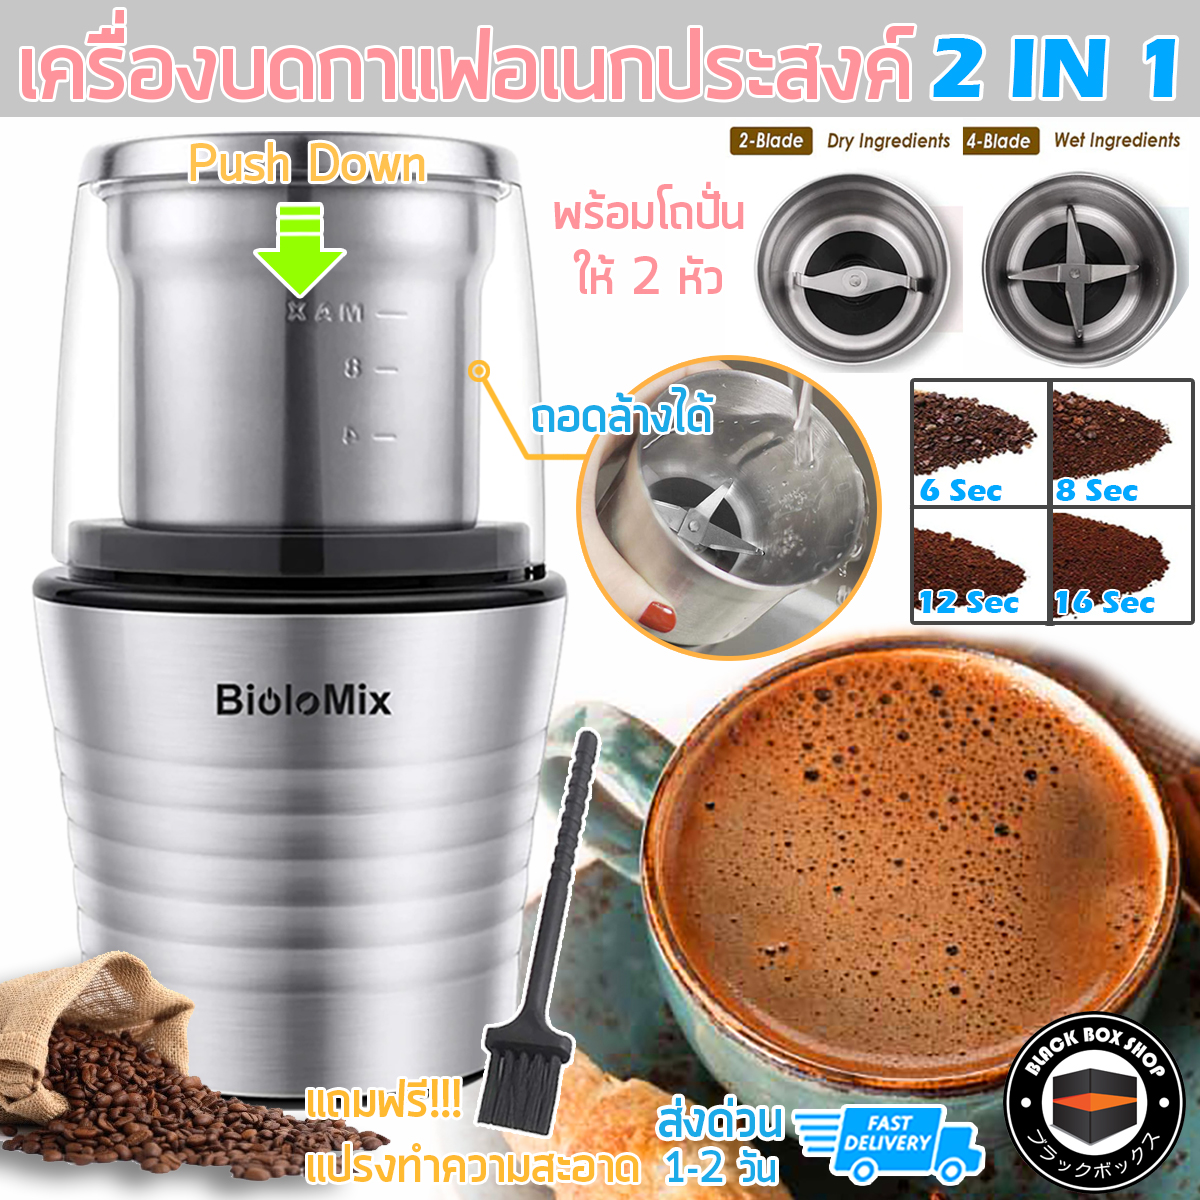 BioloMix เครื่องบดกาแฟ เครื่องบดเมล็ดกาแฟ อเนกประสงค์ เครื่องทำกาแฟ เครื่องเตรียมกาแฟ 2 IN 1 Electric Coffee grinder Small พร้อมโถปั่น 2 หัว ปั่นได้ทั้ง แบบสด แบบแห้ง ถอดล้างได้ แถมฟรีแปรงทำความสะอาด